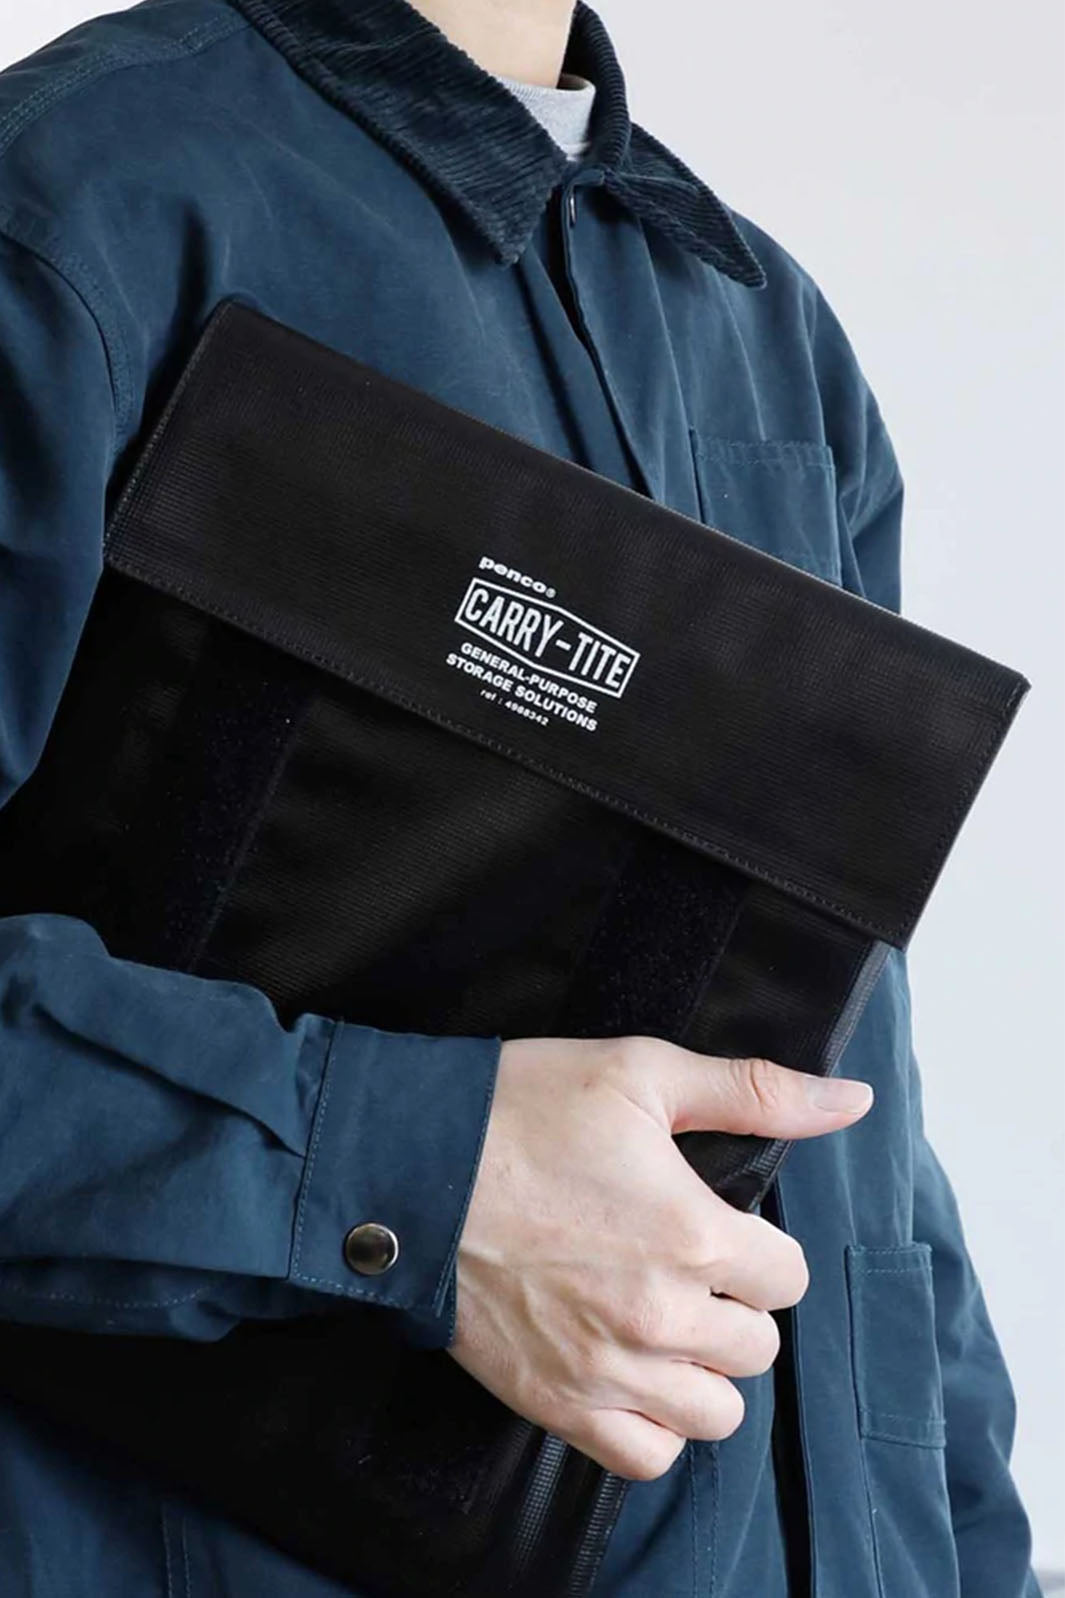 Carry Tite Laptop Case - Black